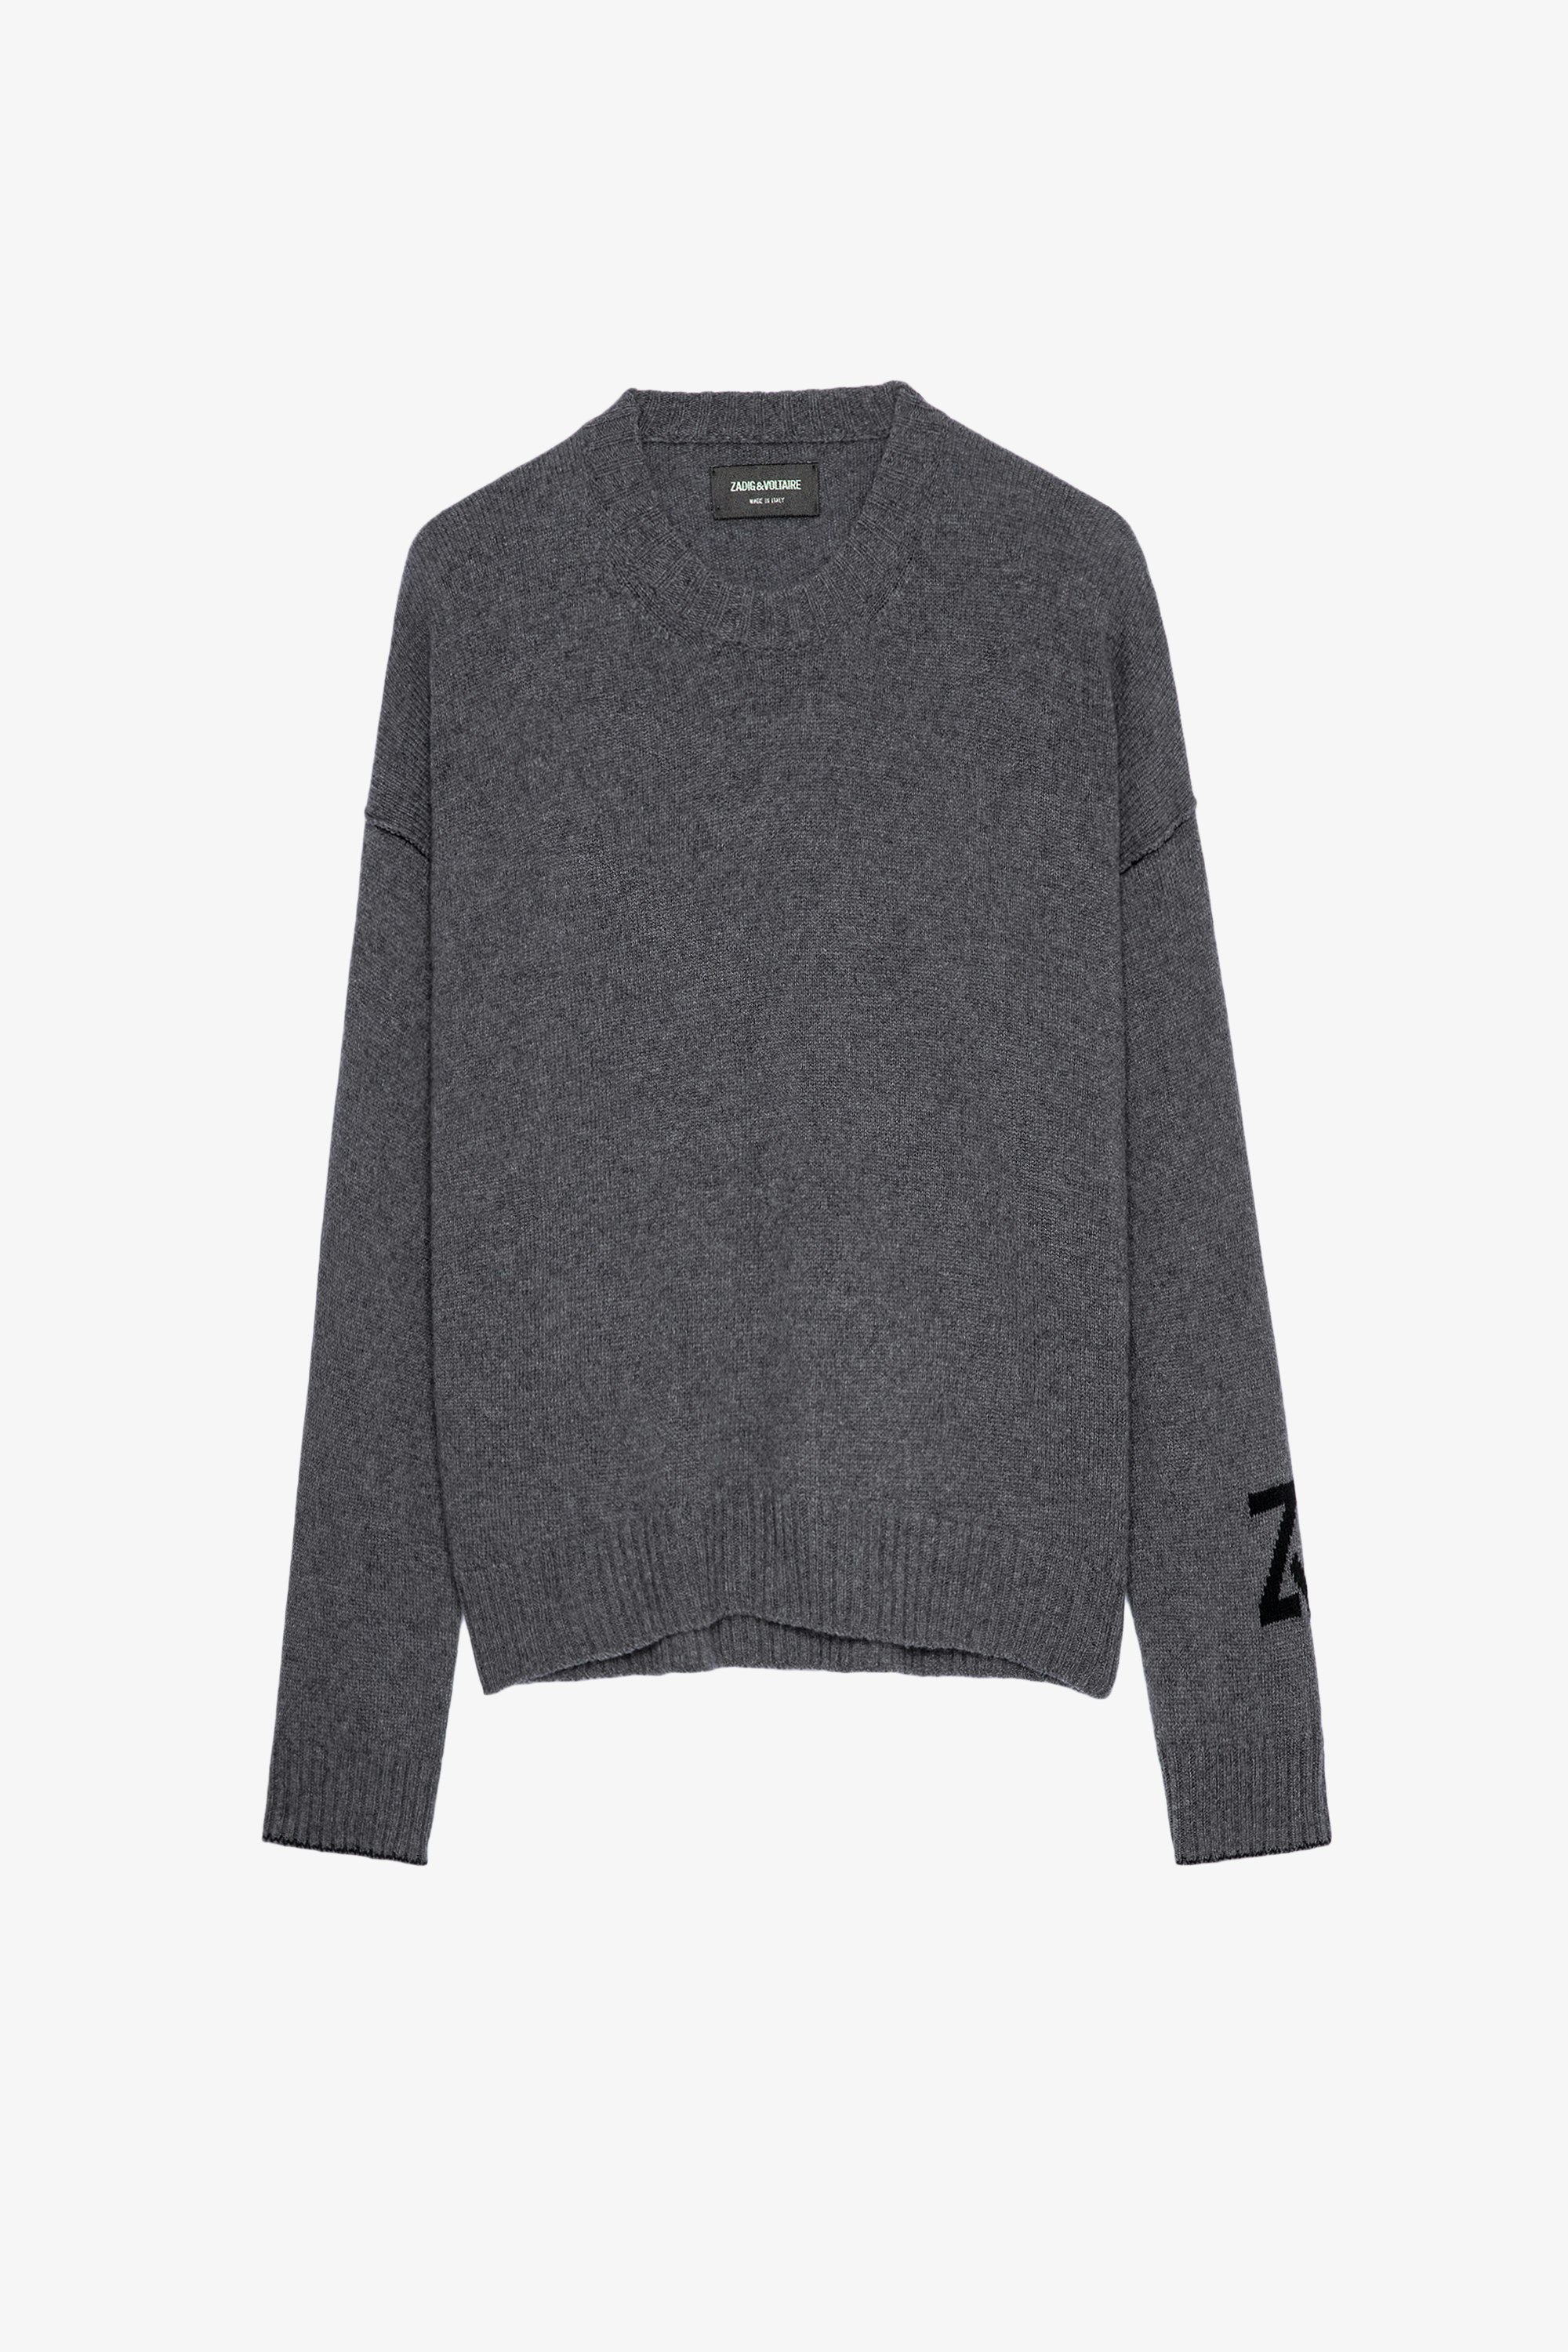 Markus ニット Women’s mottled grey cashmere ZV sweater